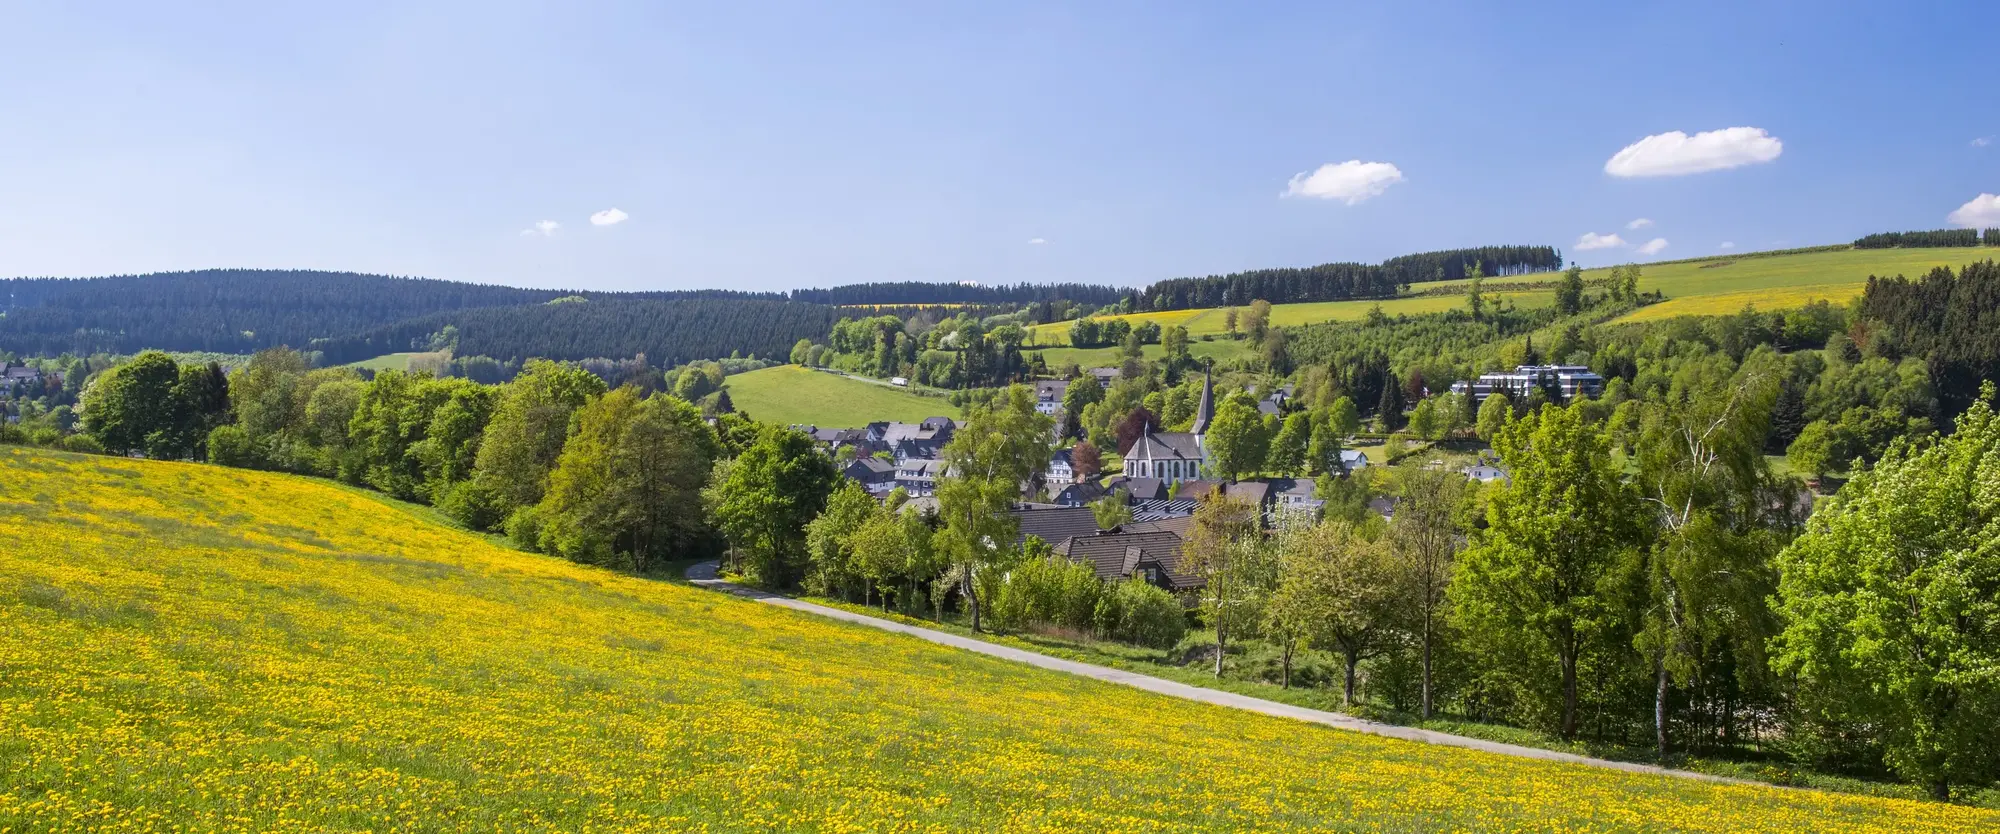 Ein Teil der Ortschaft Grönebach inmitten von Wiesen und Wäldern.